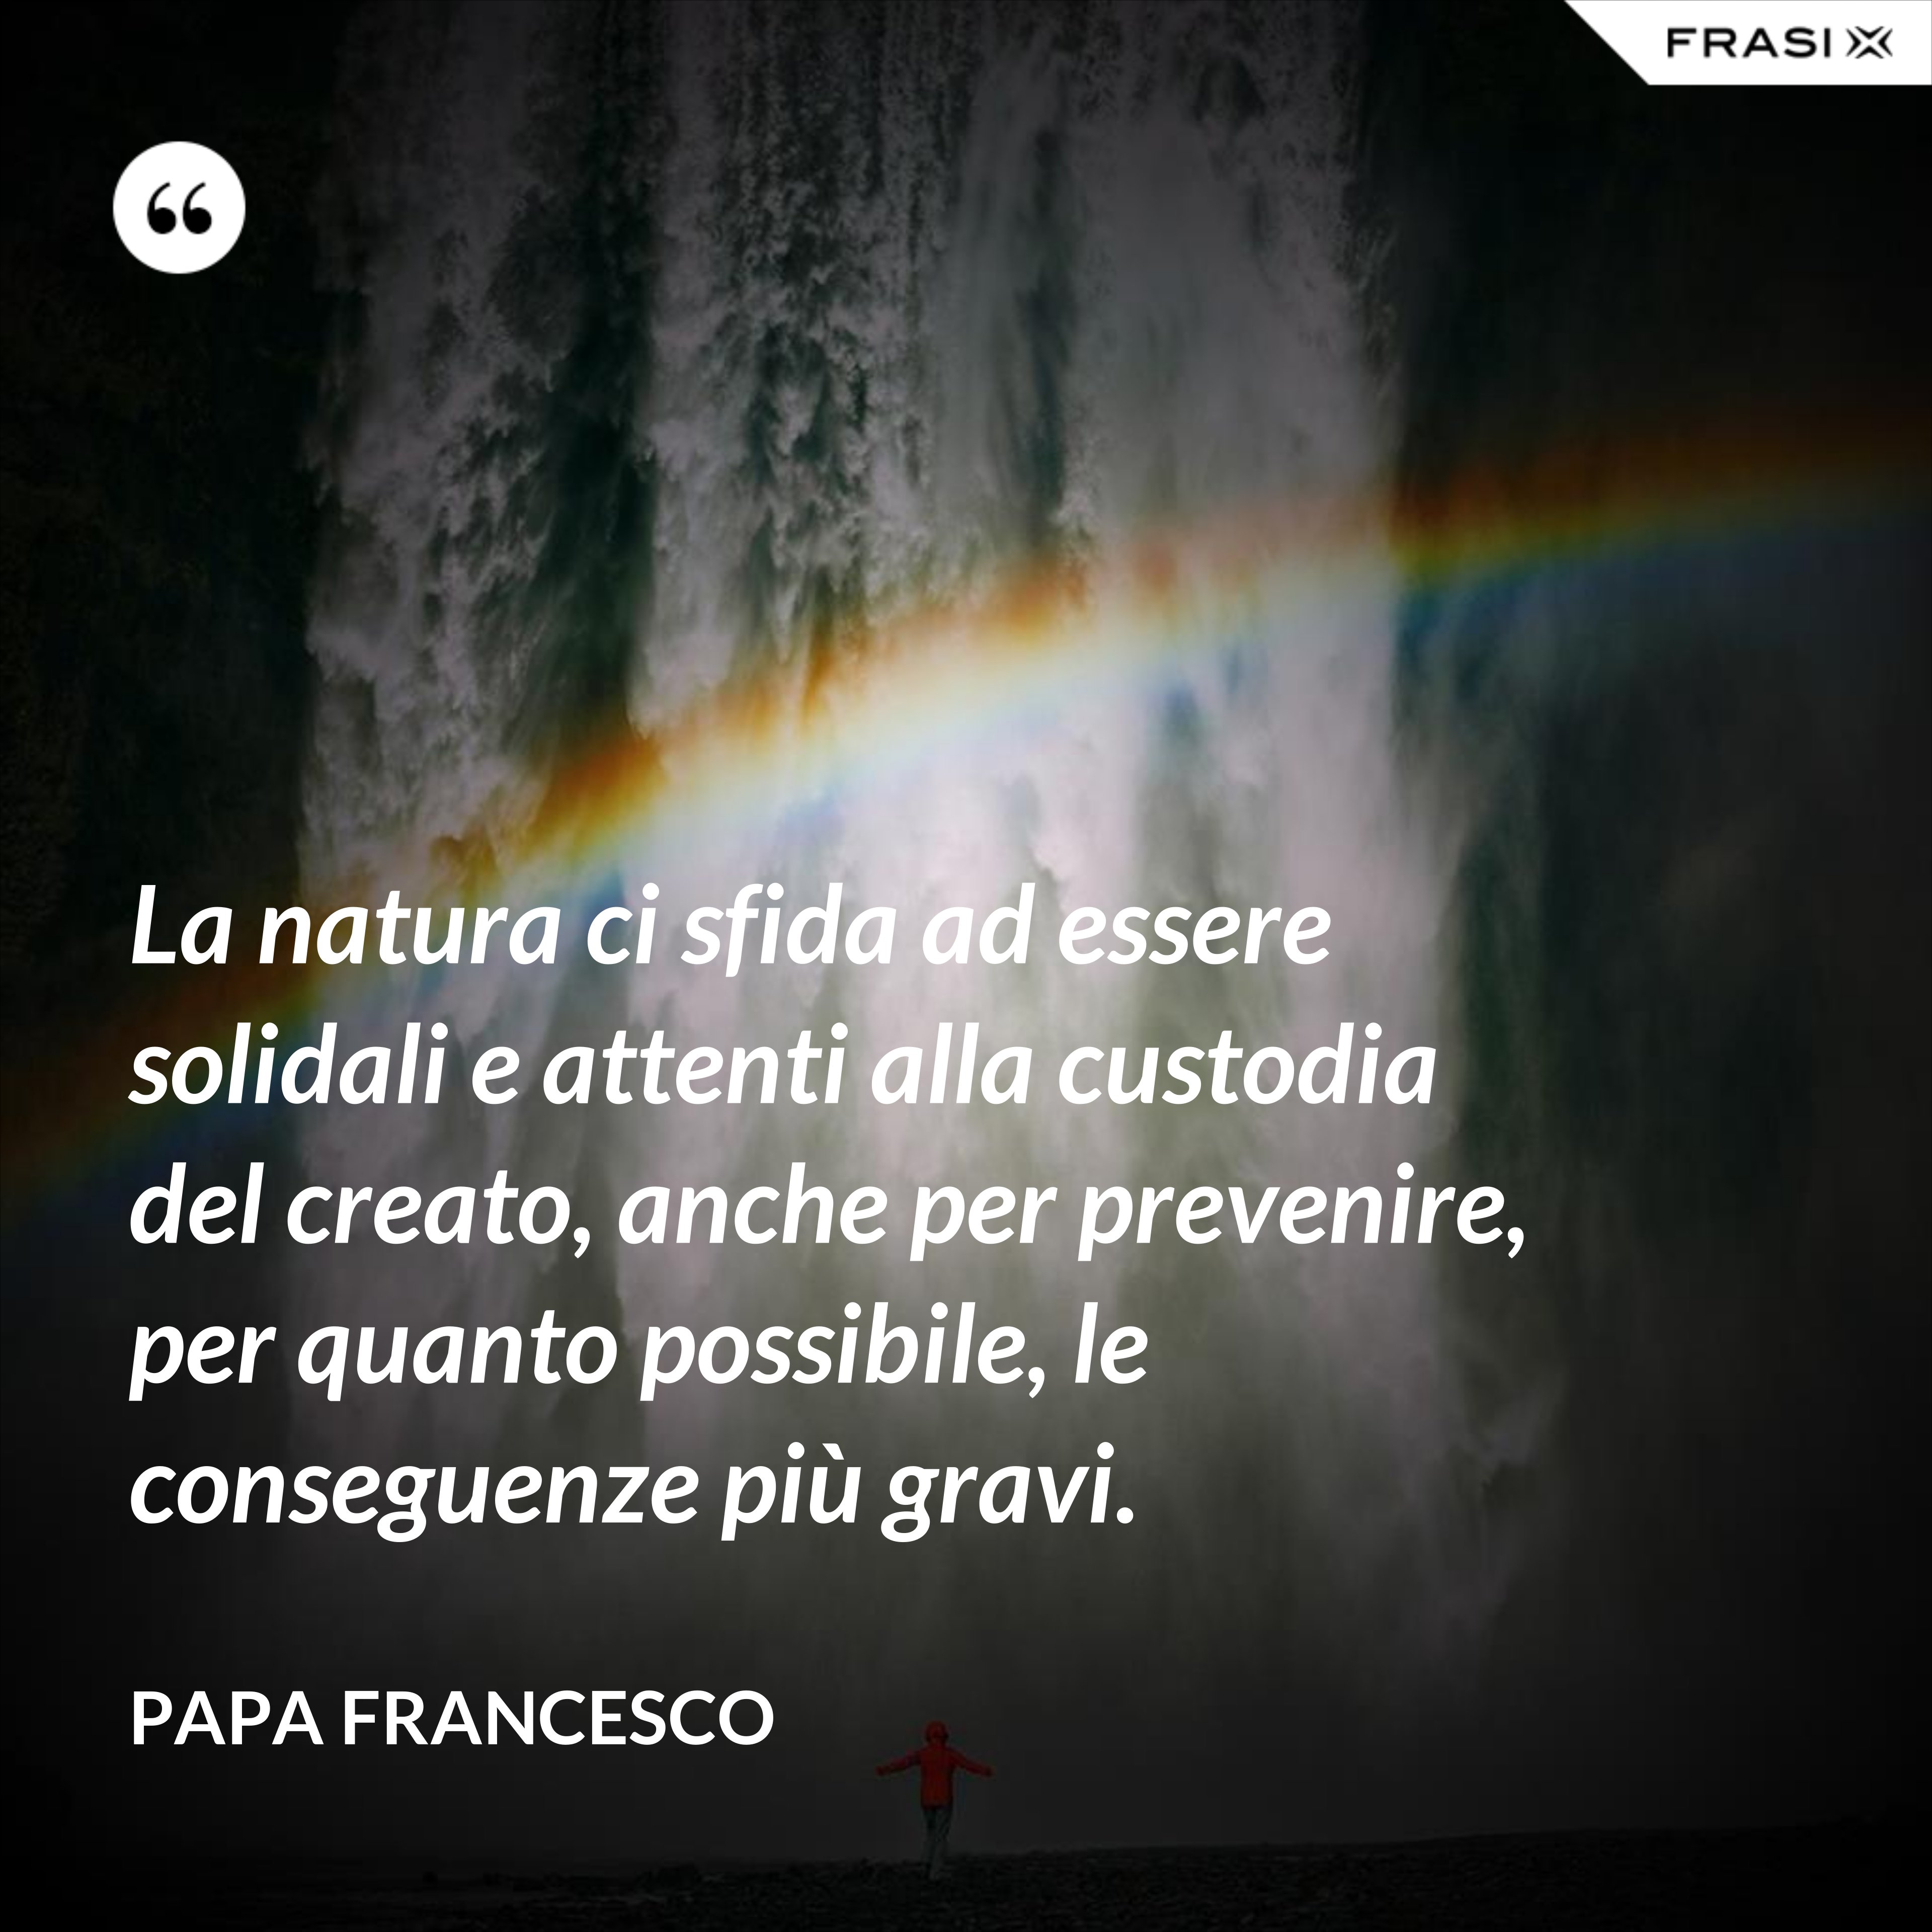 La natura ci sfida ad essere solidali e attenti alla custodia del creato, anche per prevenire, per quanto possibile, le conseguenze più gravi. - Papa Francesco